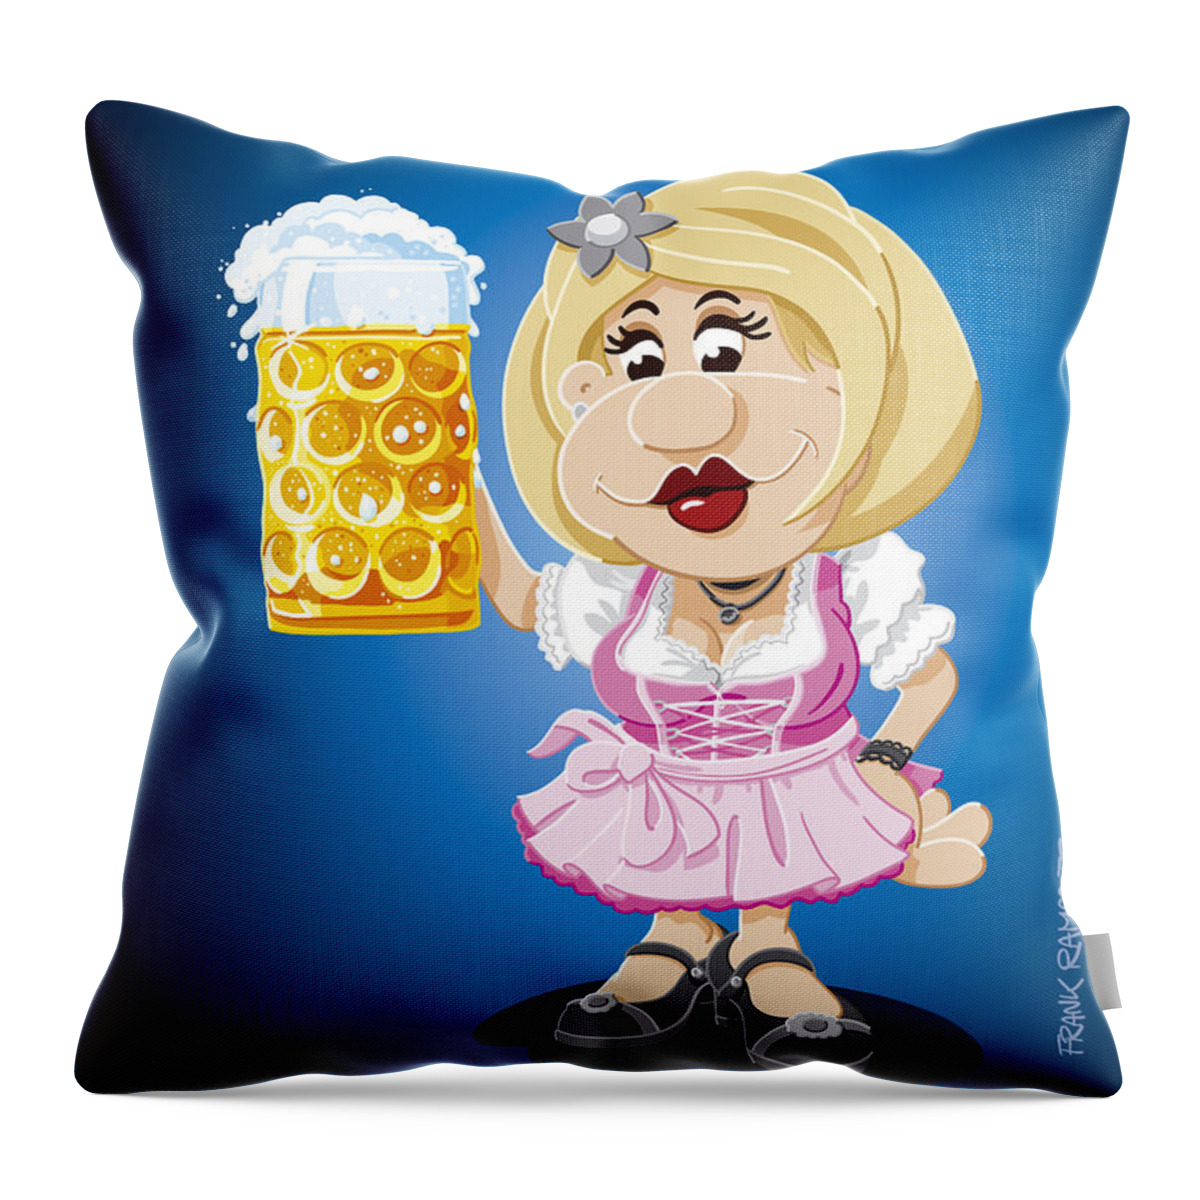 Frank Ramspott Throw Pillow featuring the digital art Beer Stein Dirndl Oktoberfest Cartoon Woman by Frank Ramspott